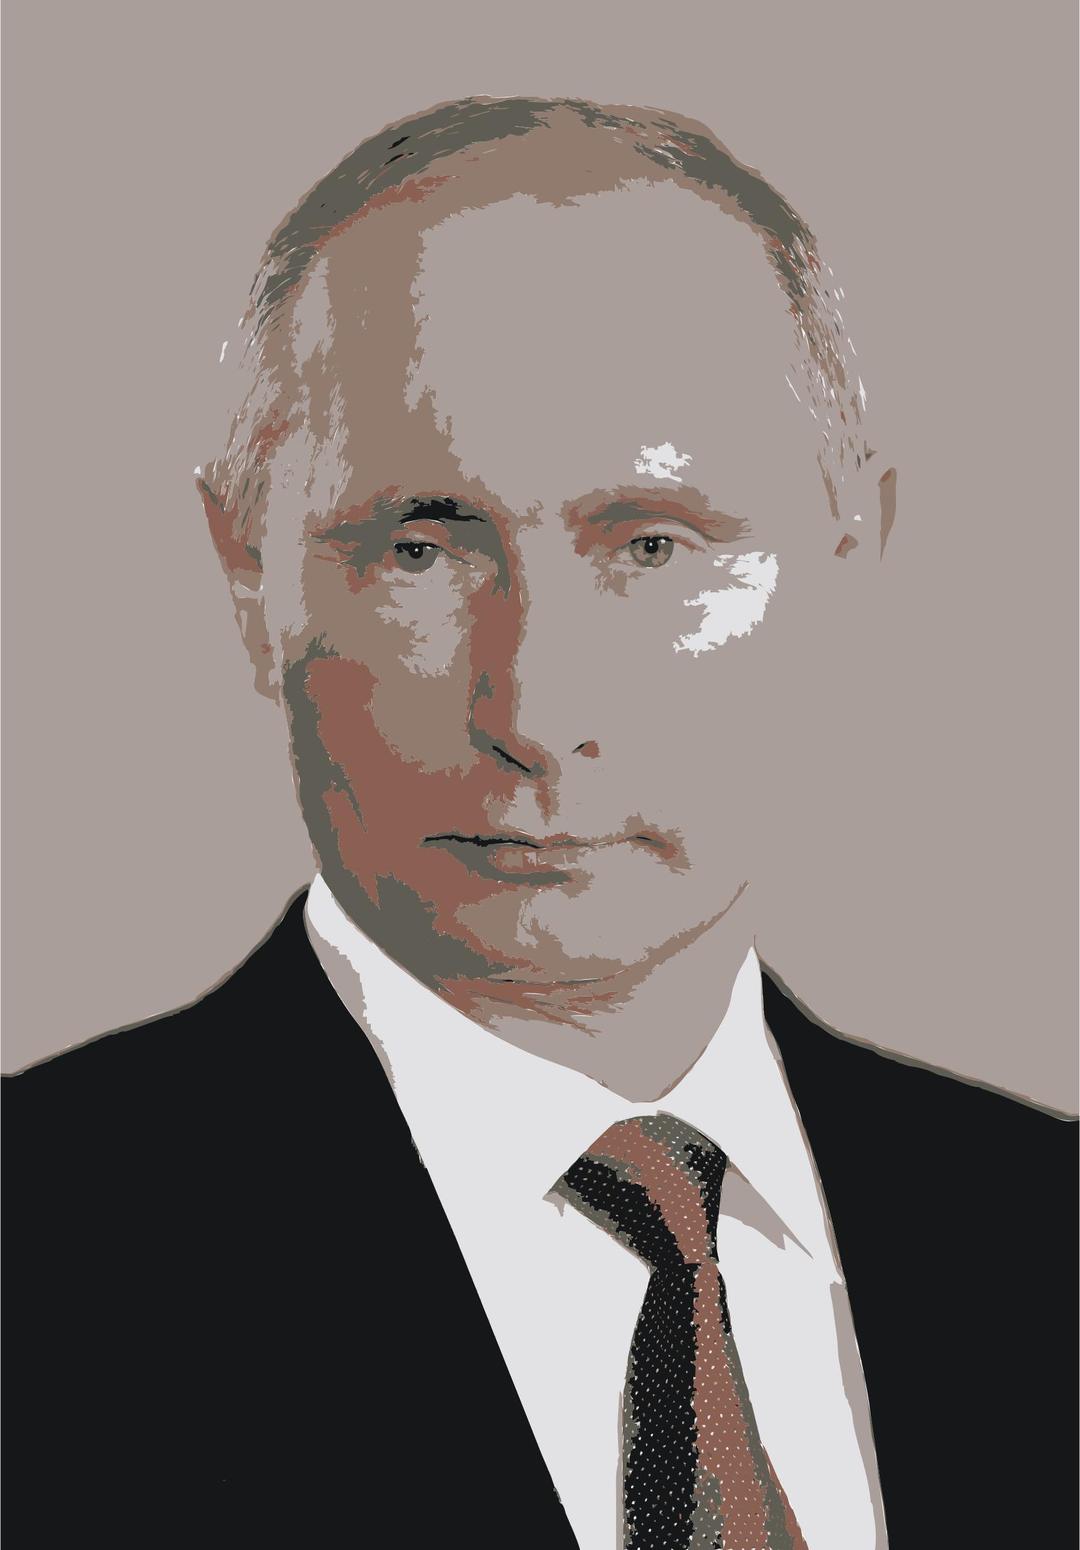 REQUEST: Vladimir Putin 2006 png transparent